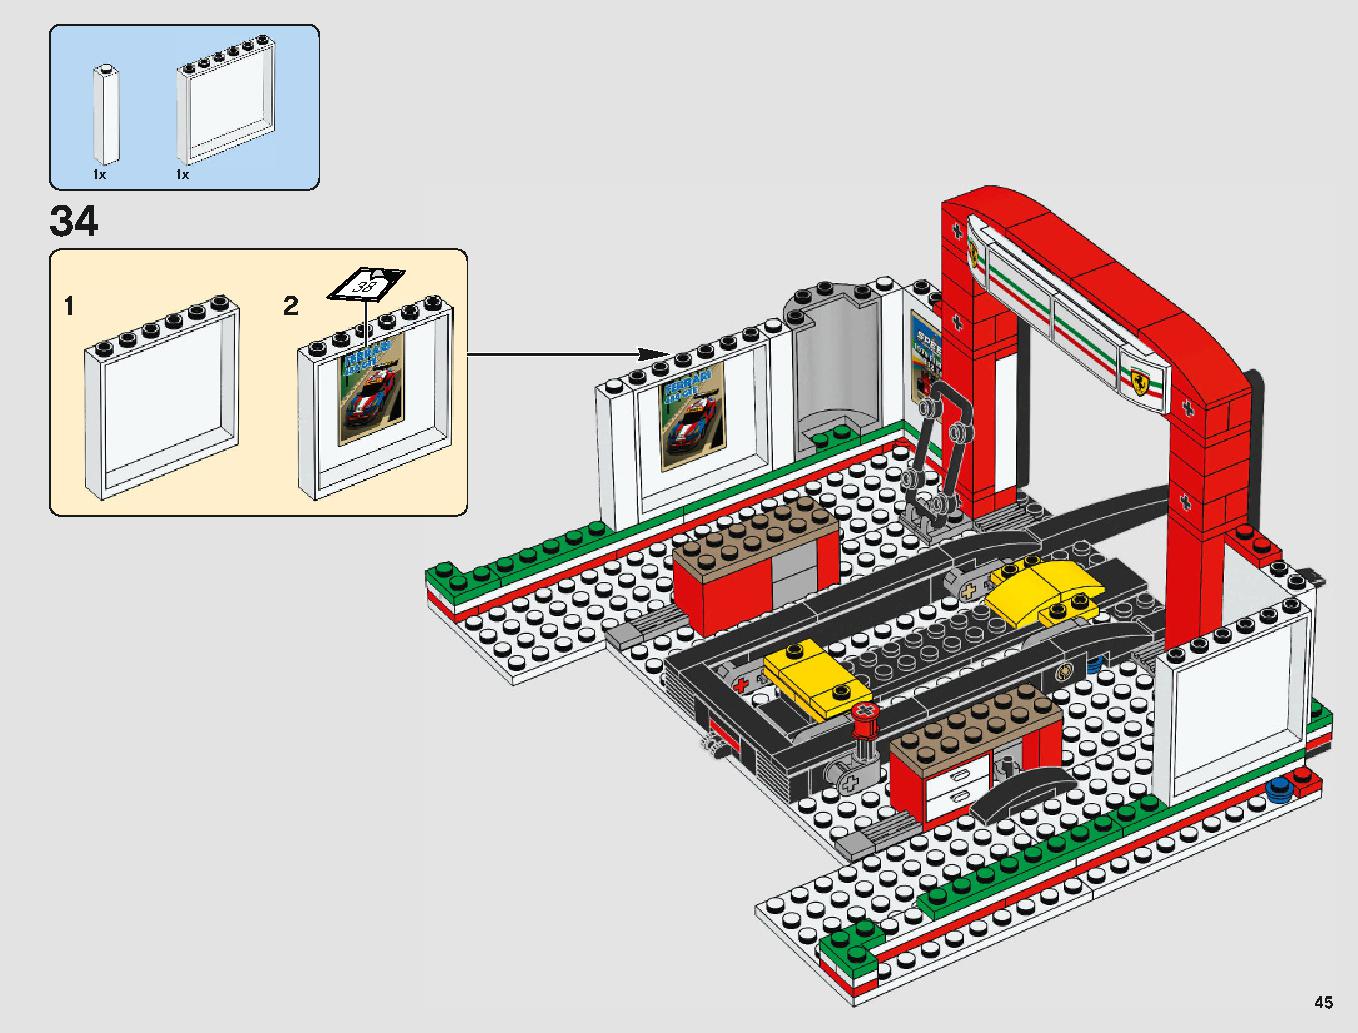 フェラーリ・アルティメット・ガレージ 75889 レゴの商品情報 レゴの説明書・組立方法 45 page